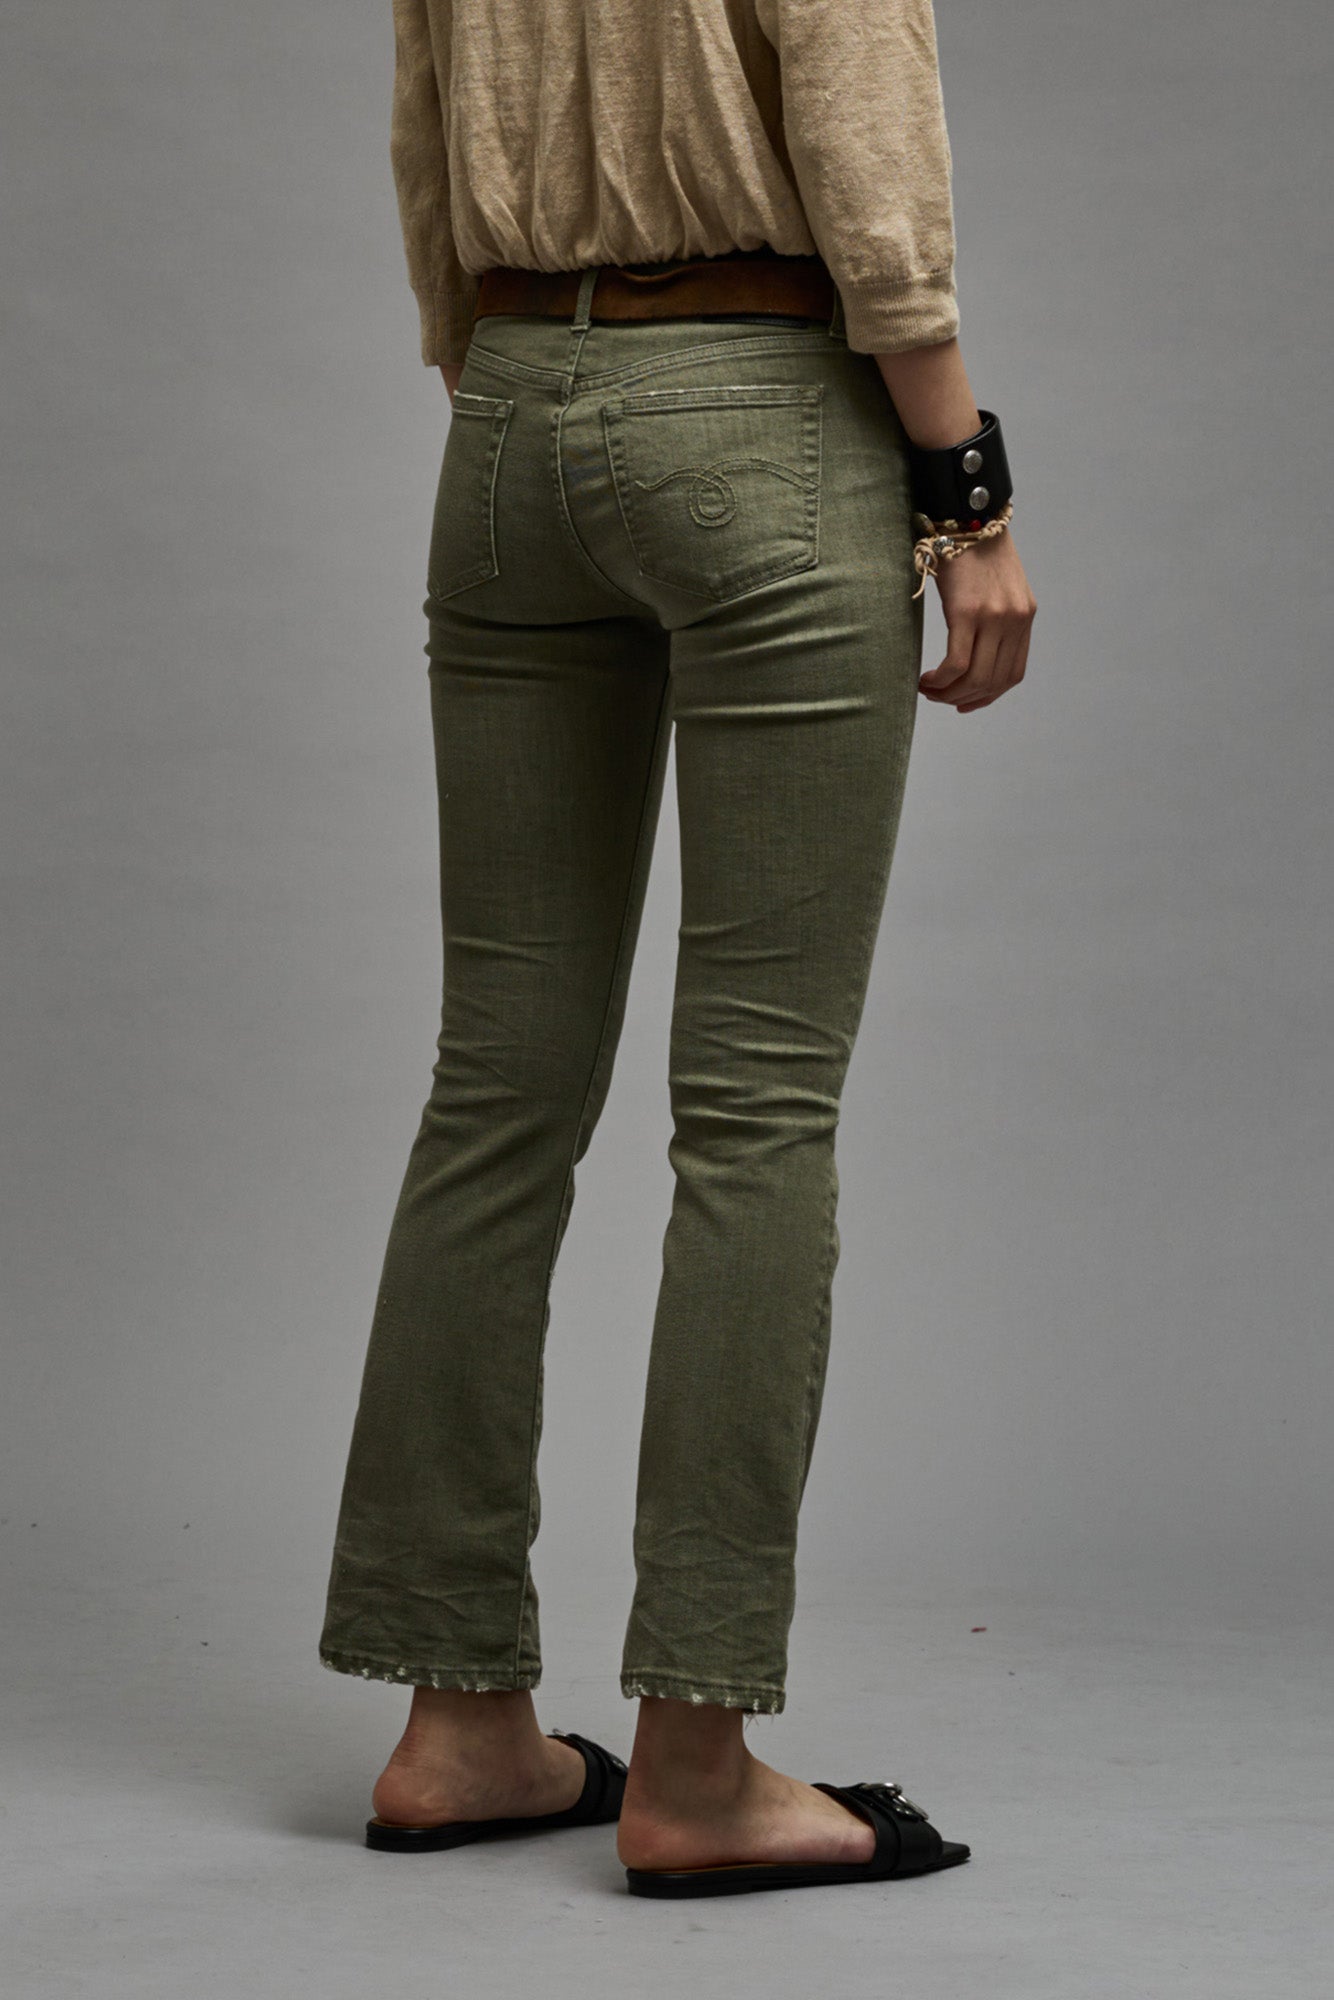 Sofia Vergara Skinny Ankle Skinny Jeans Women's Size 8 Dark Wash R13